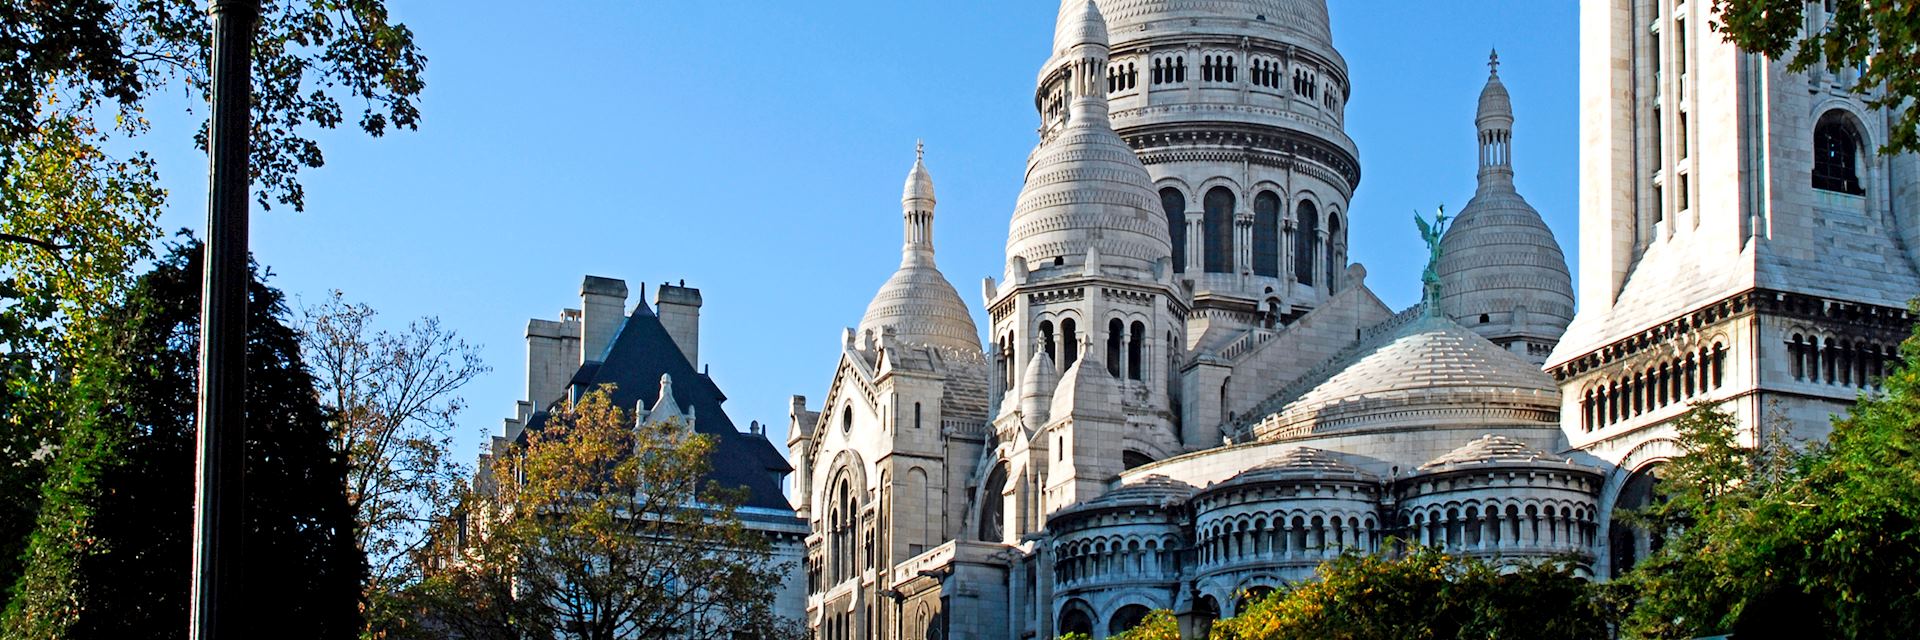 Sacré-Coeur in Montmartre, Paris